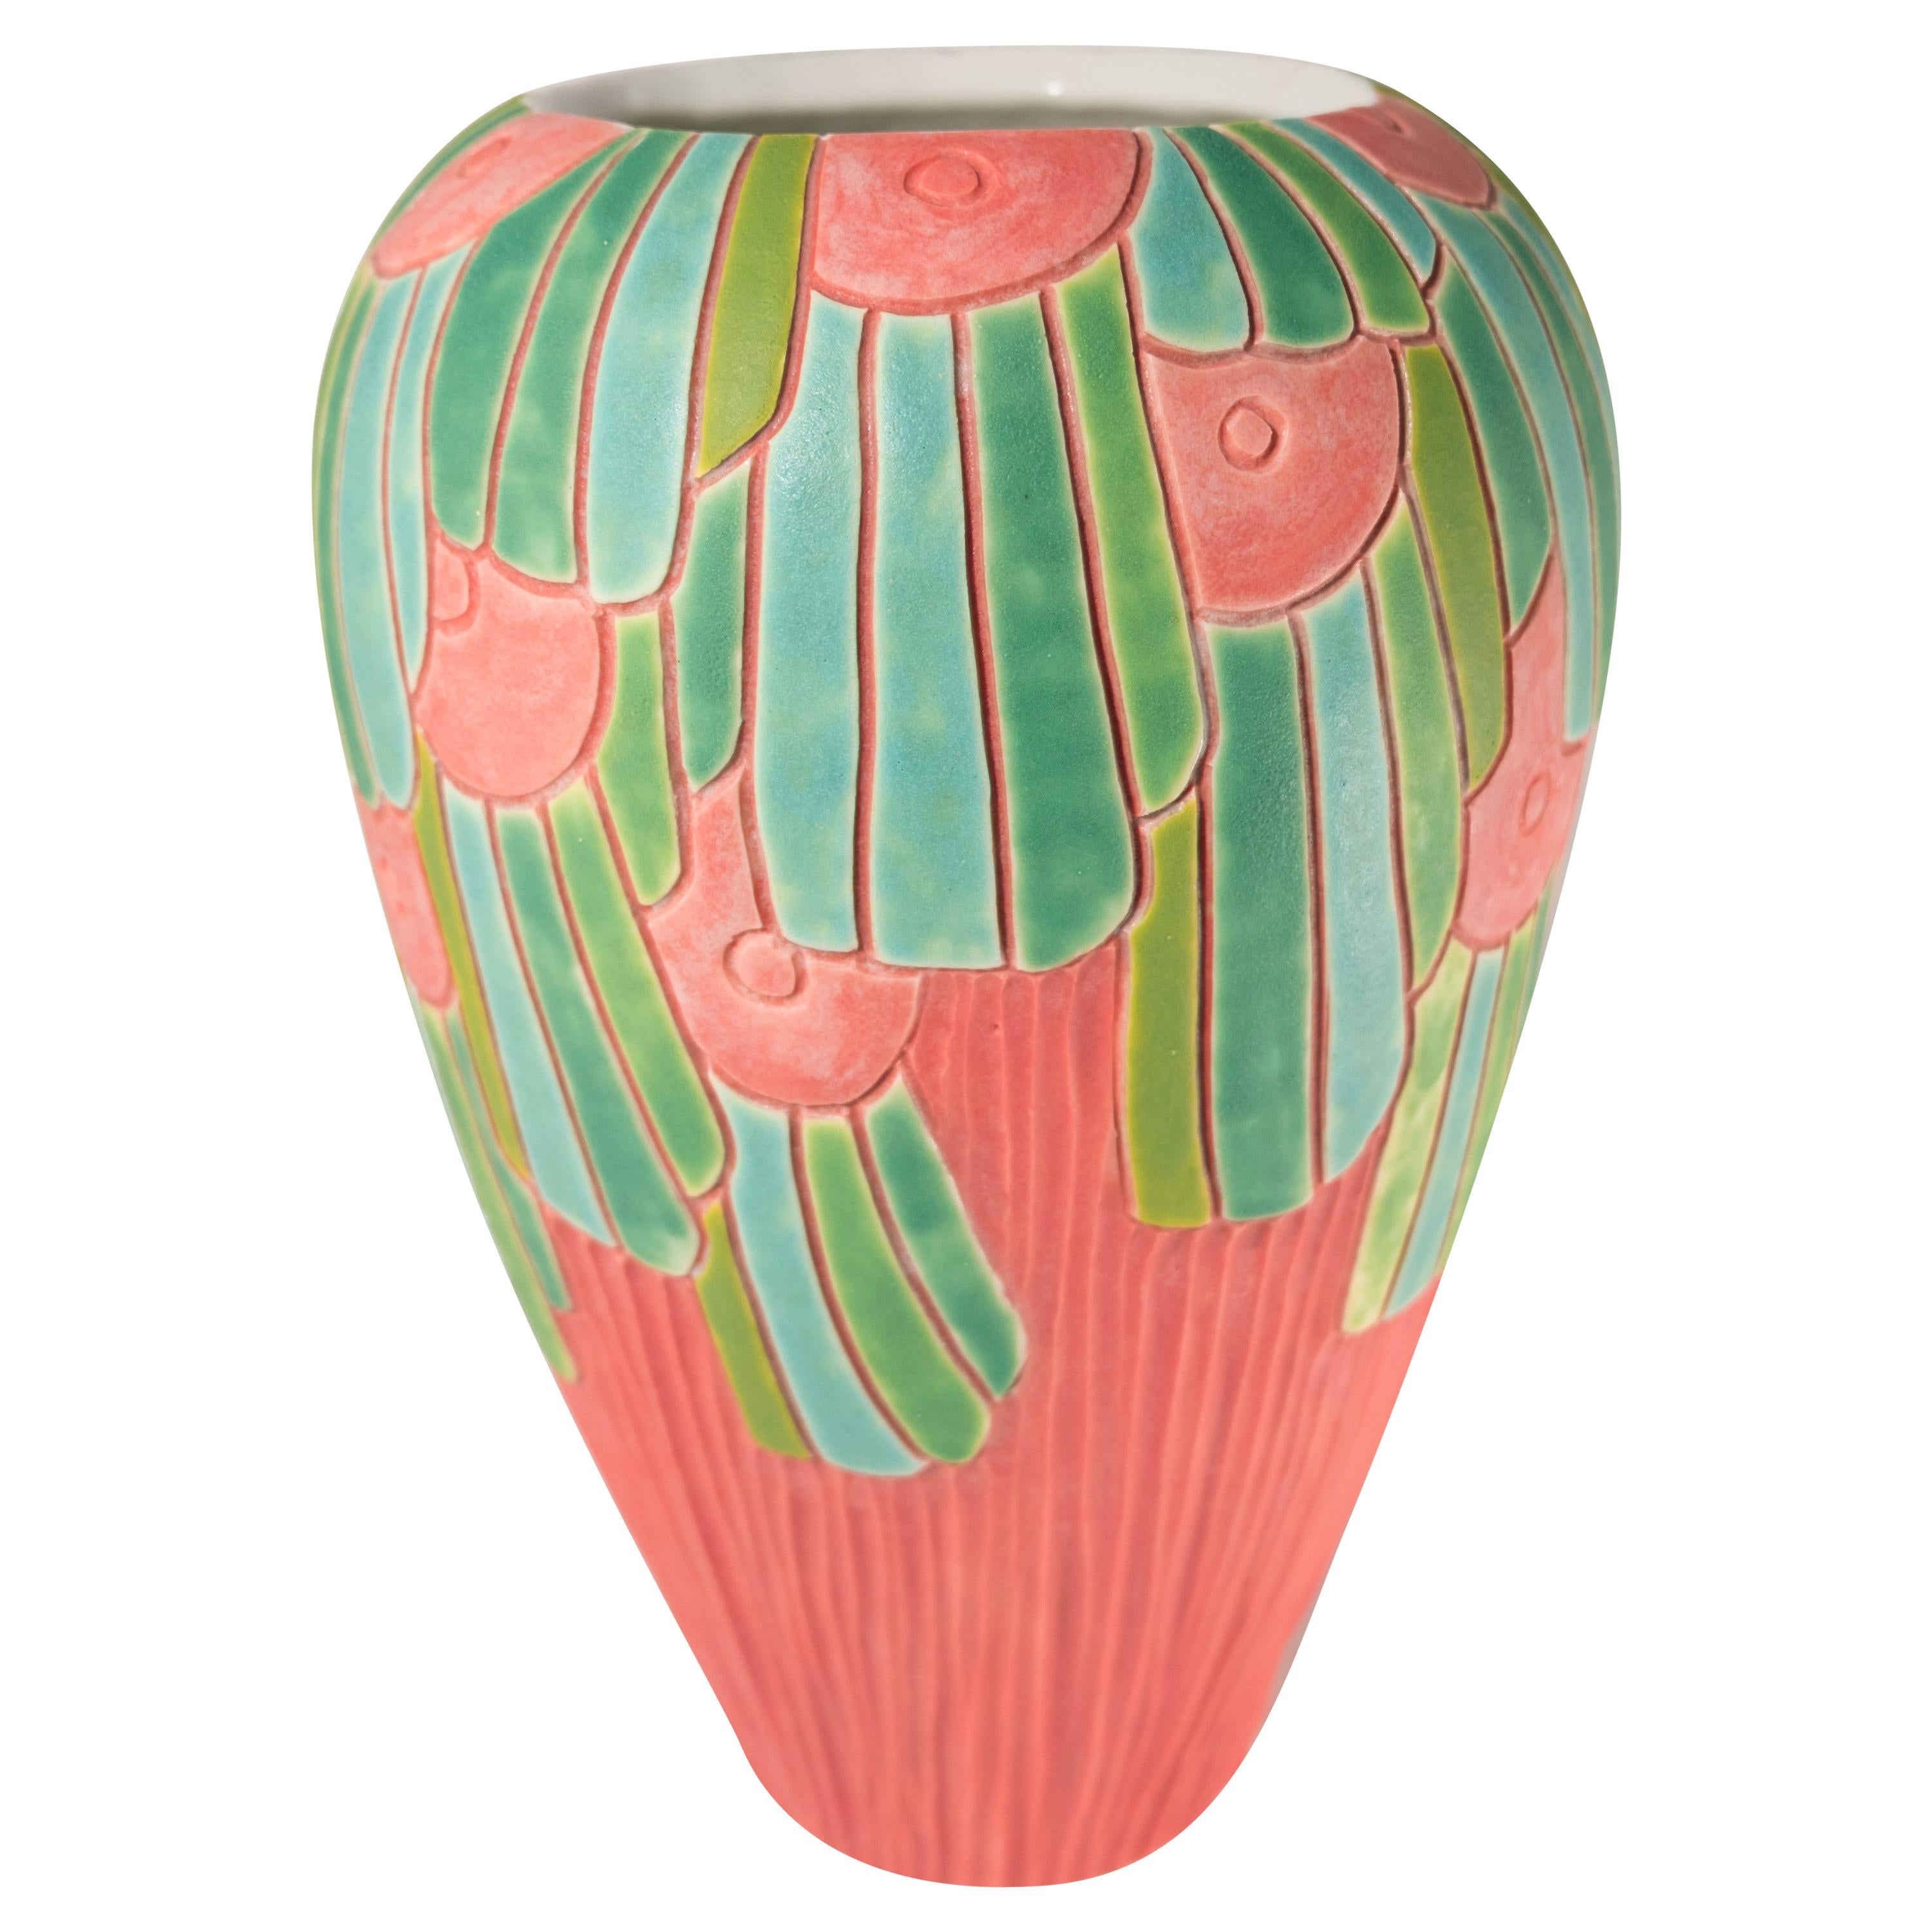 Grand vase en porcelaine d'art "Copan" sculpté à la main